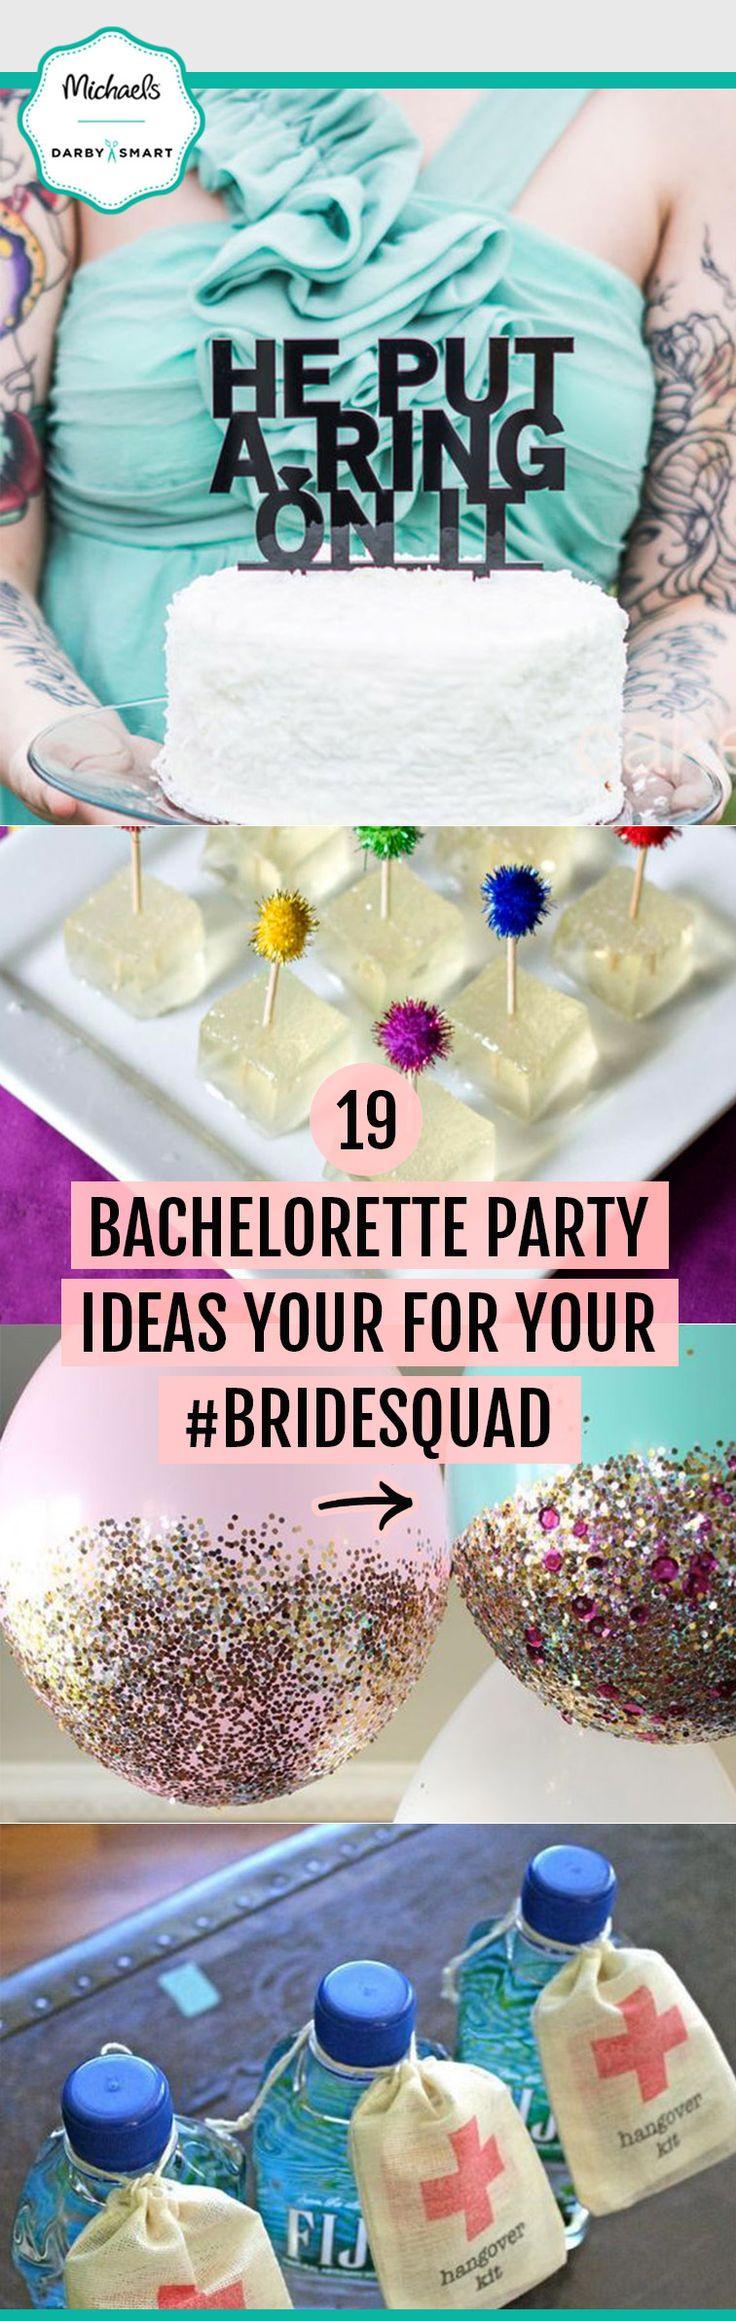 Different Bachelorette Party Ideas
 1000 Unique Bachelorette Ideas on Pinterest